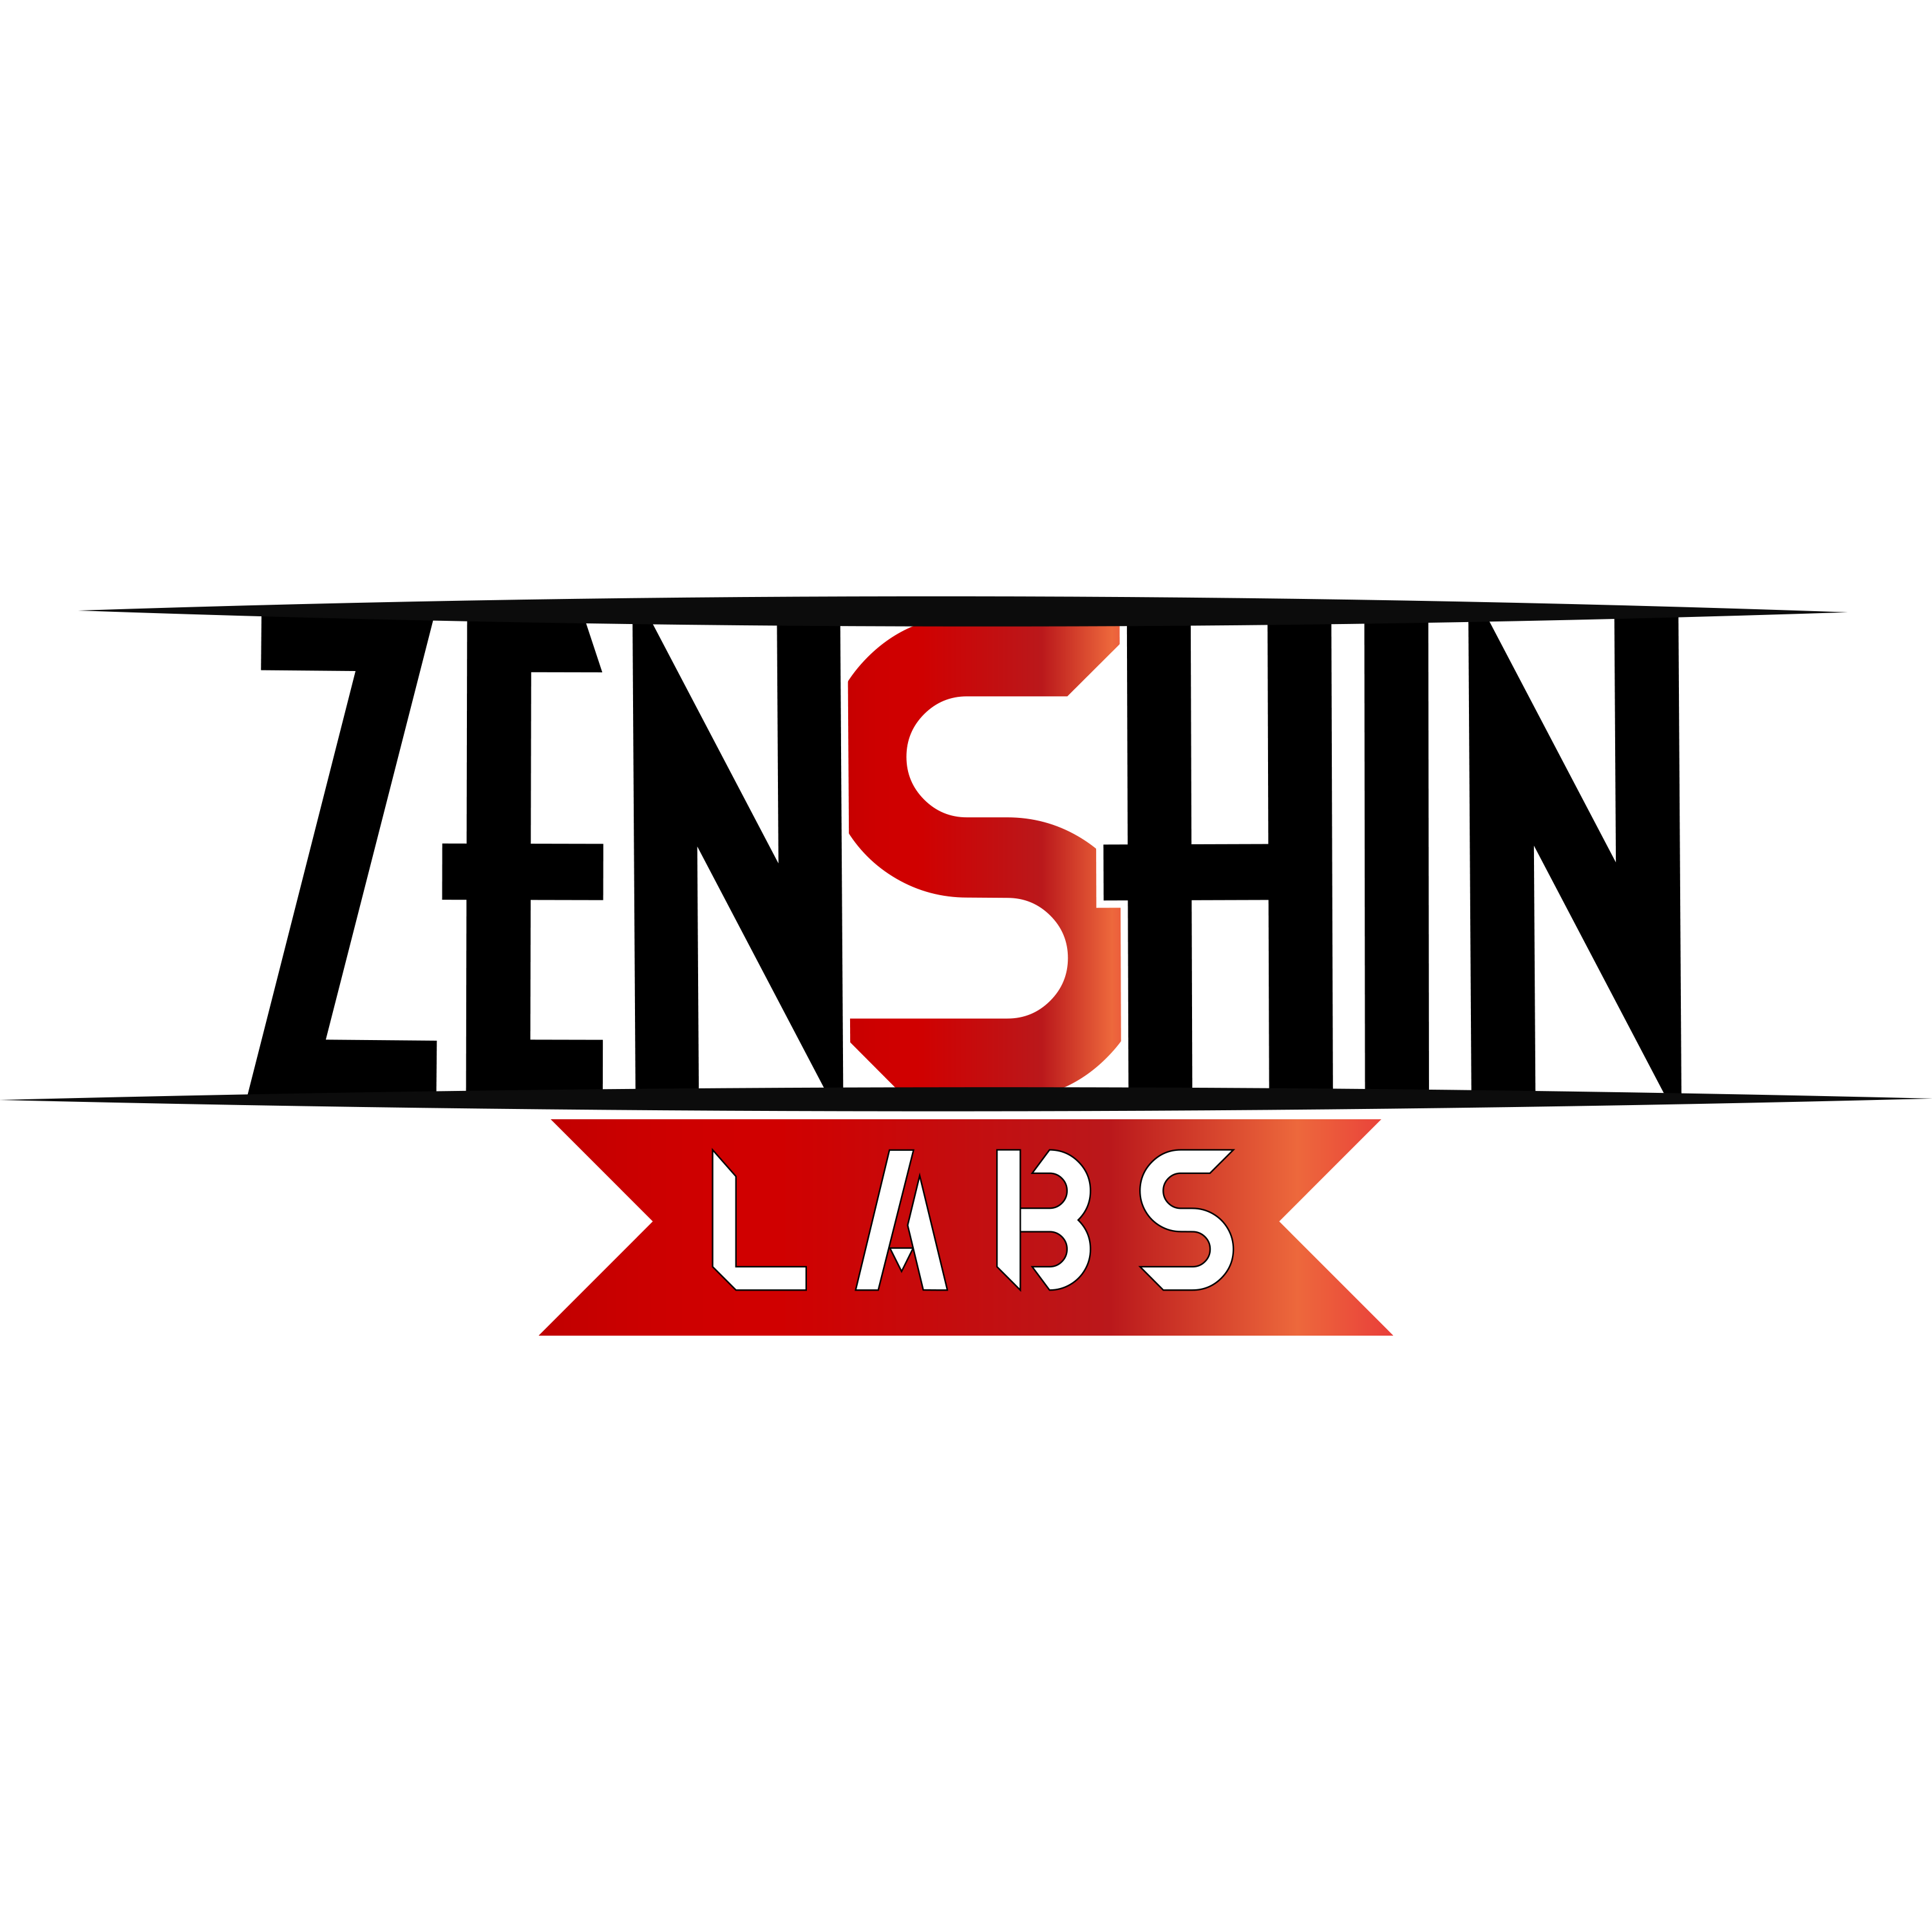 ZenshinLabs